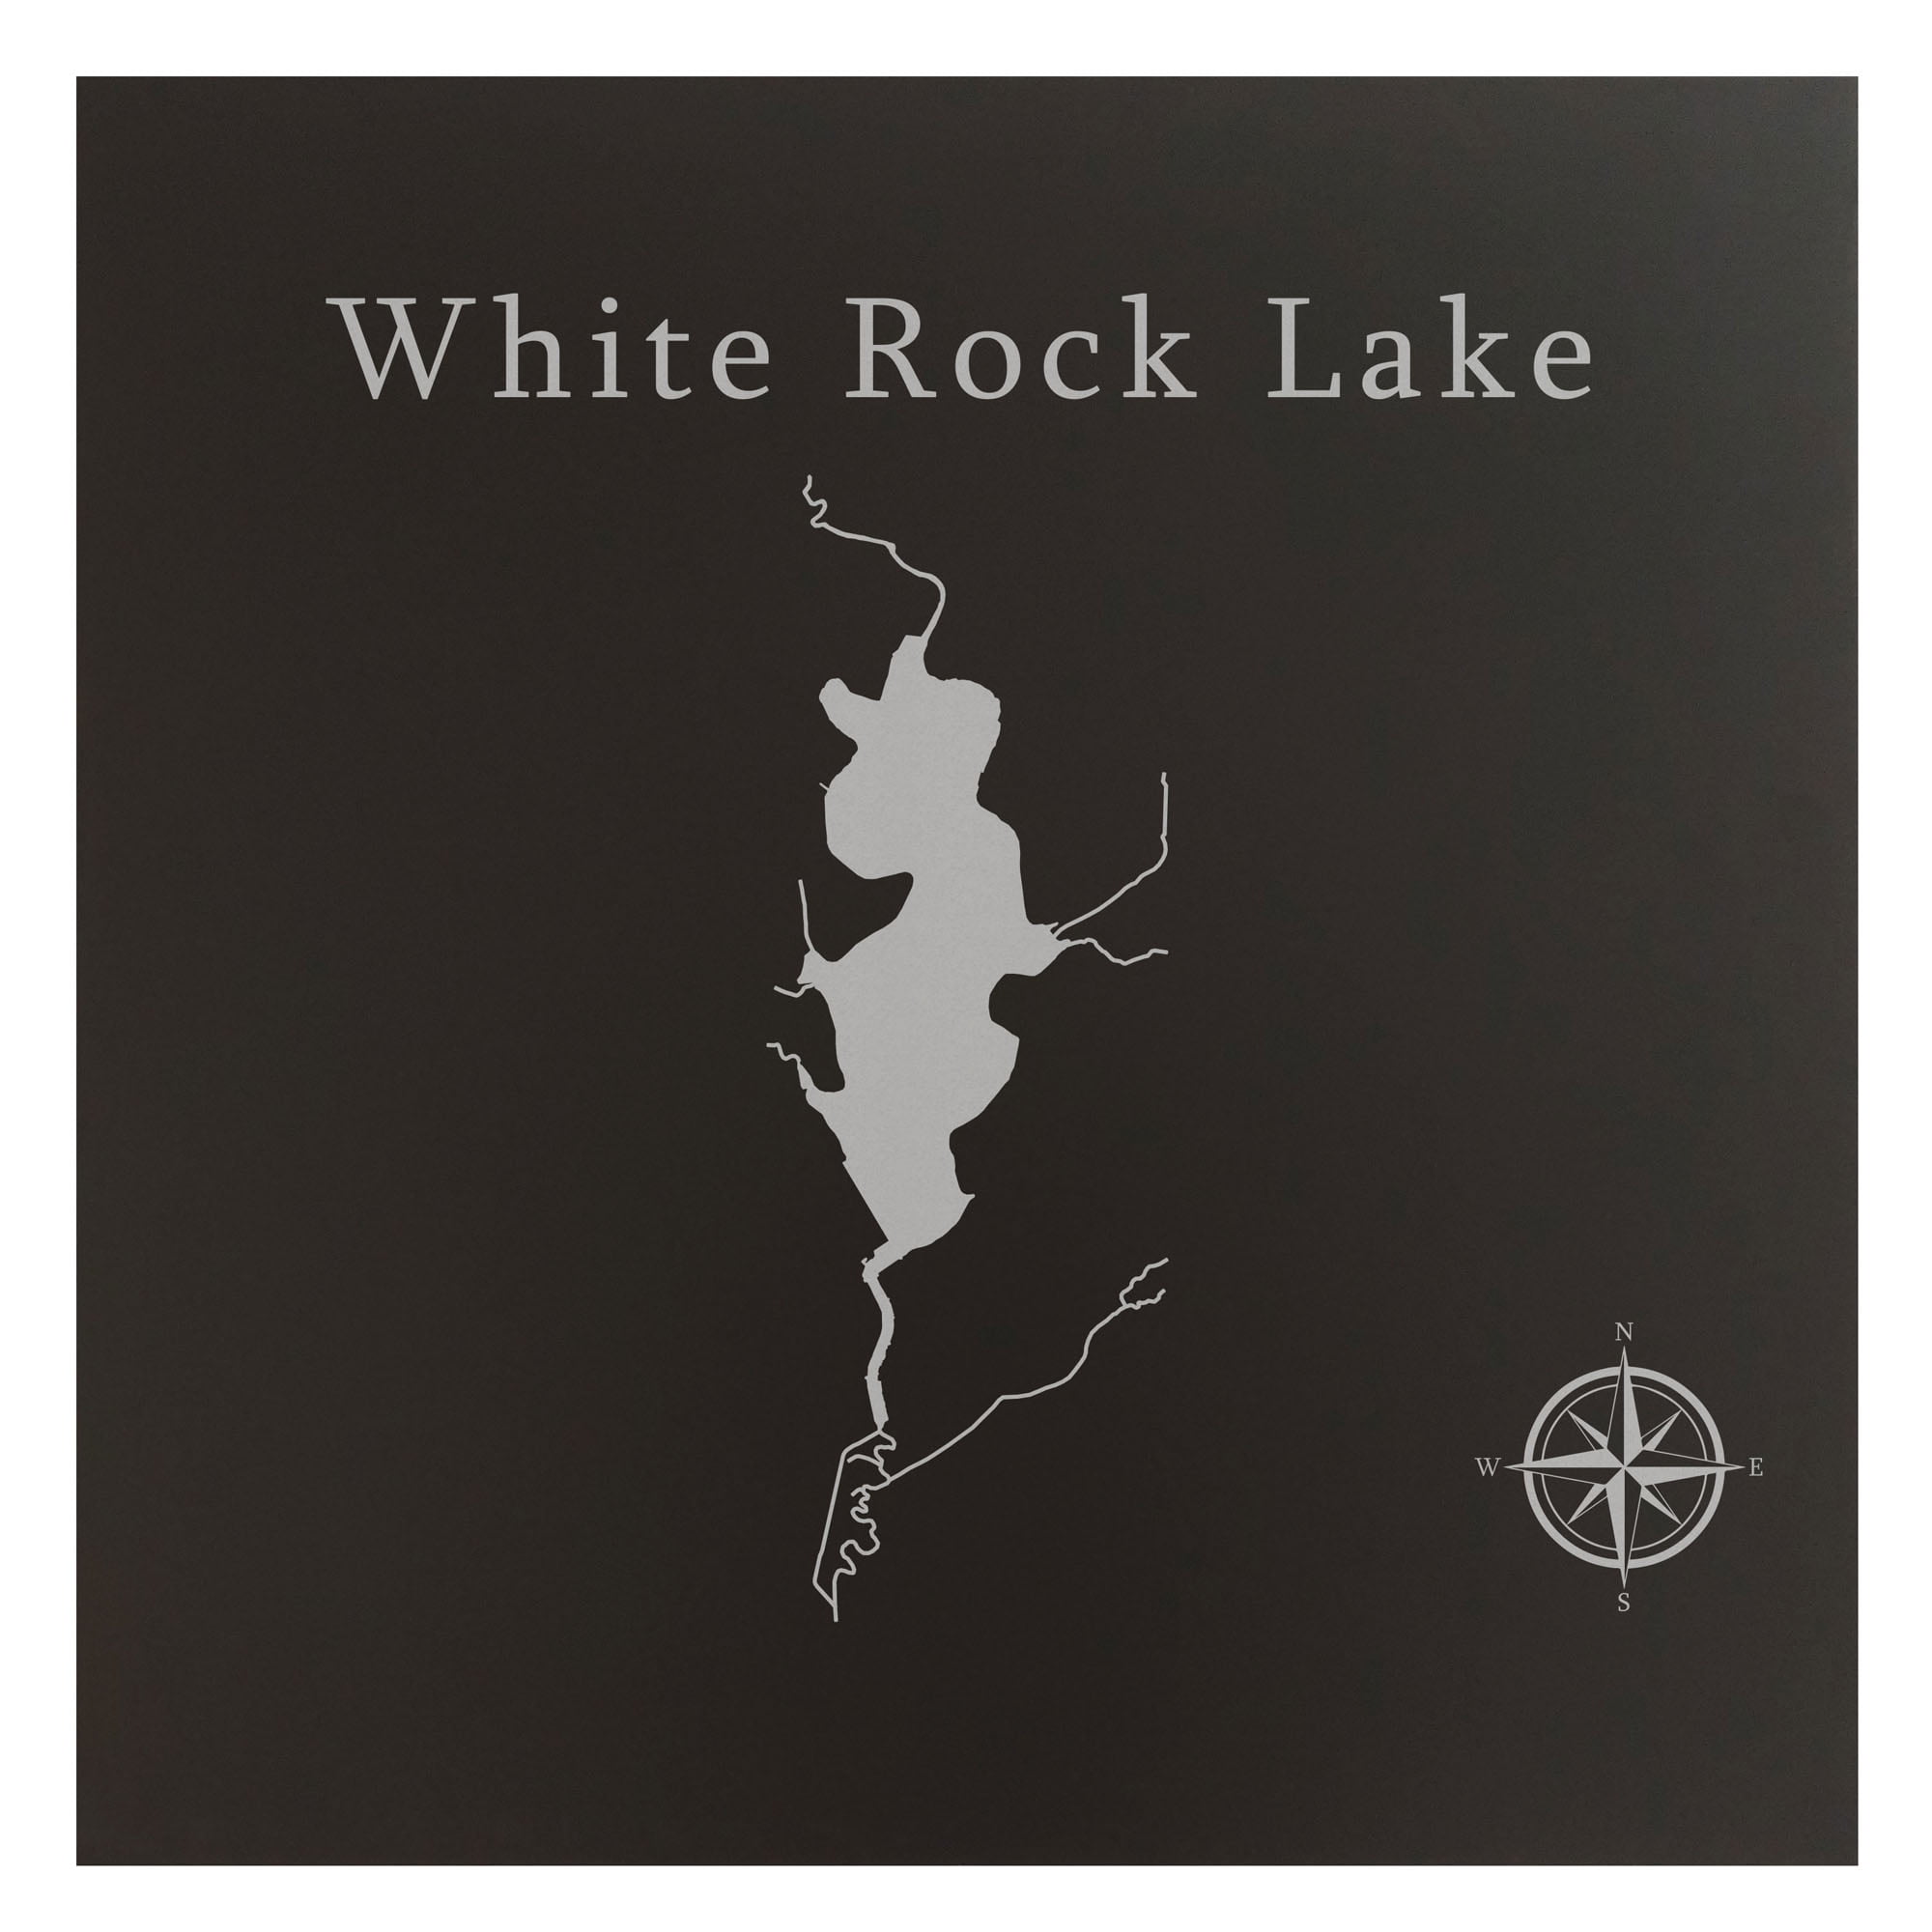 White Rock Lake Map 24x24 Black Metal Wall Art Office Decor T